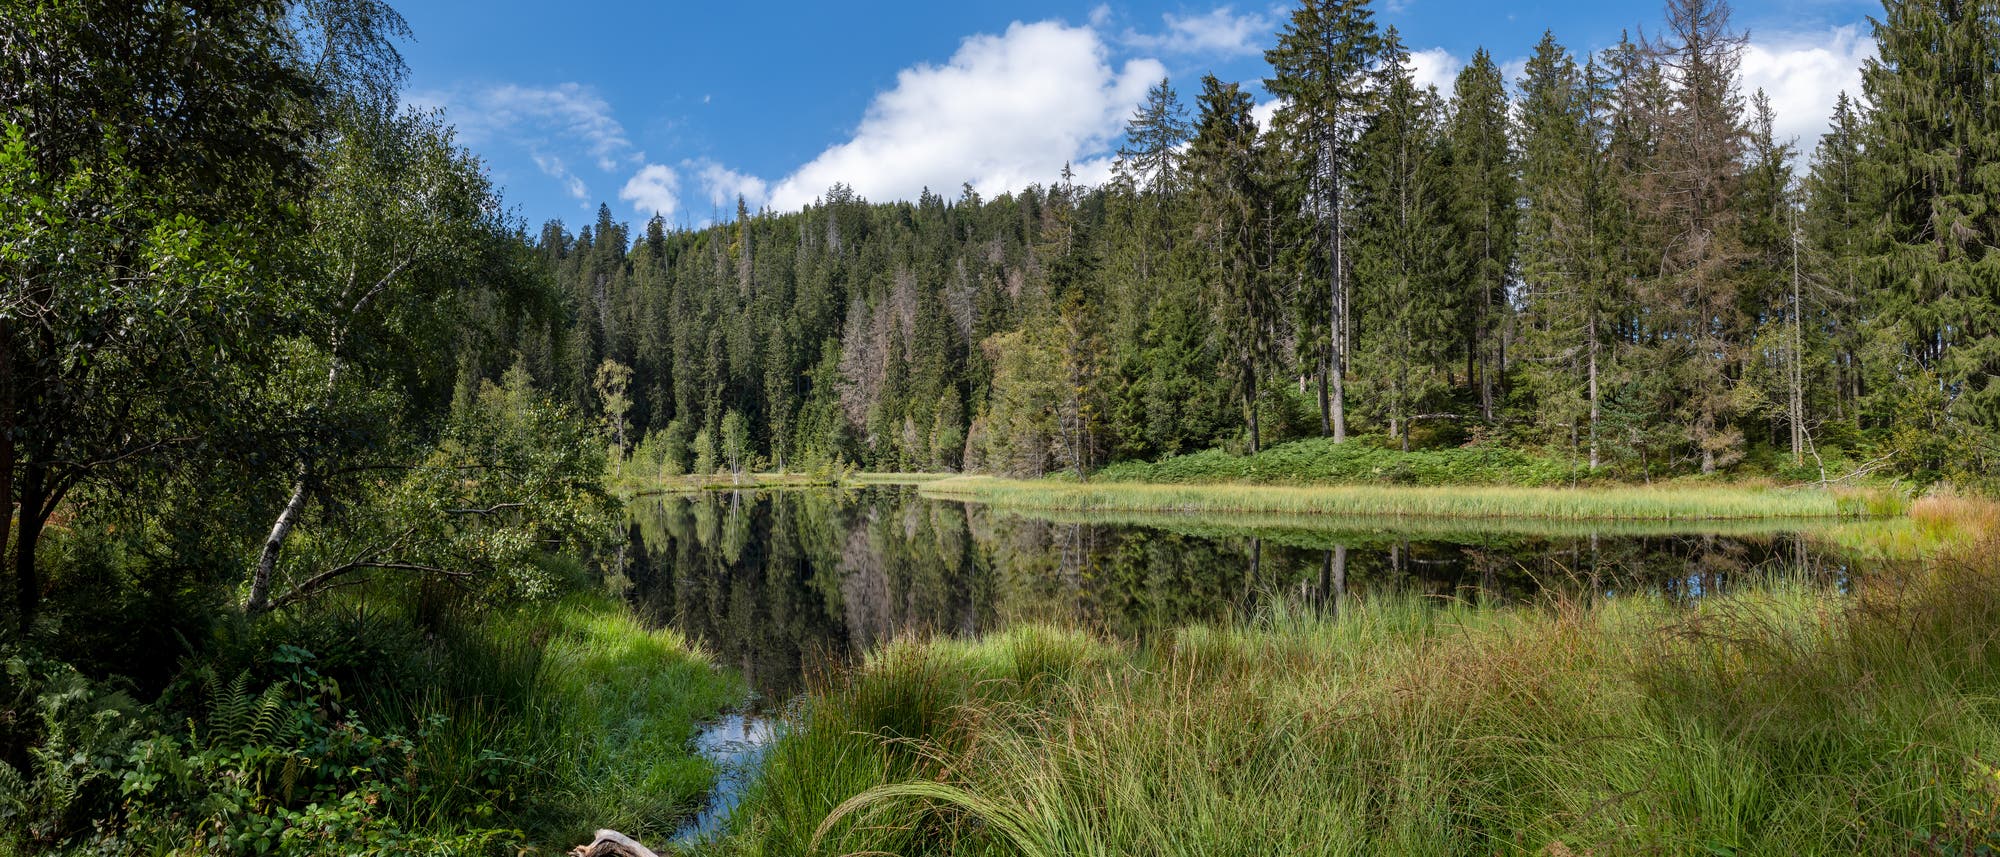 Naturbelassender See im Schwarzwald mit grünen Bäumen, Sträuchern und Gräsern außenrum